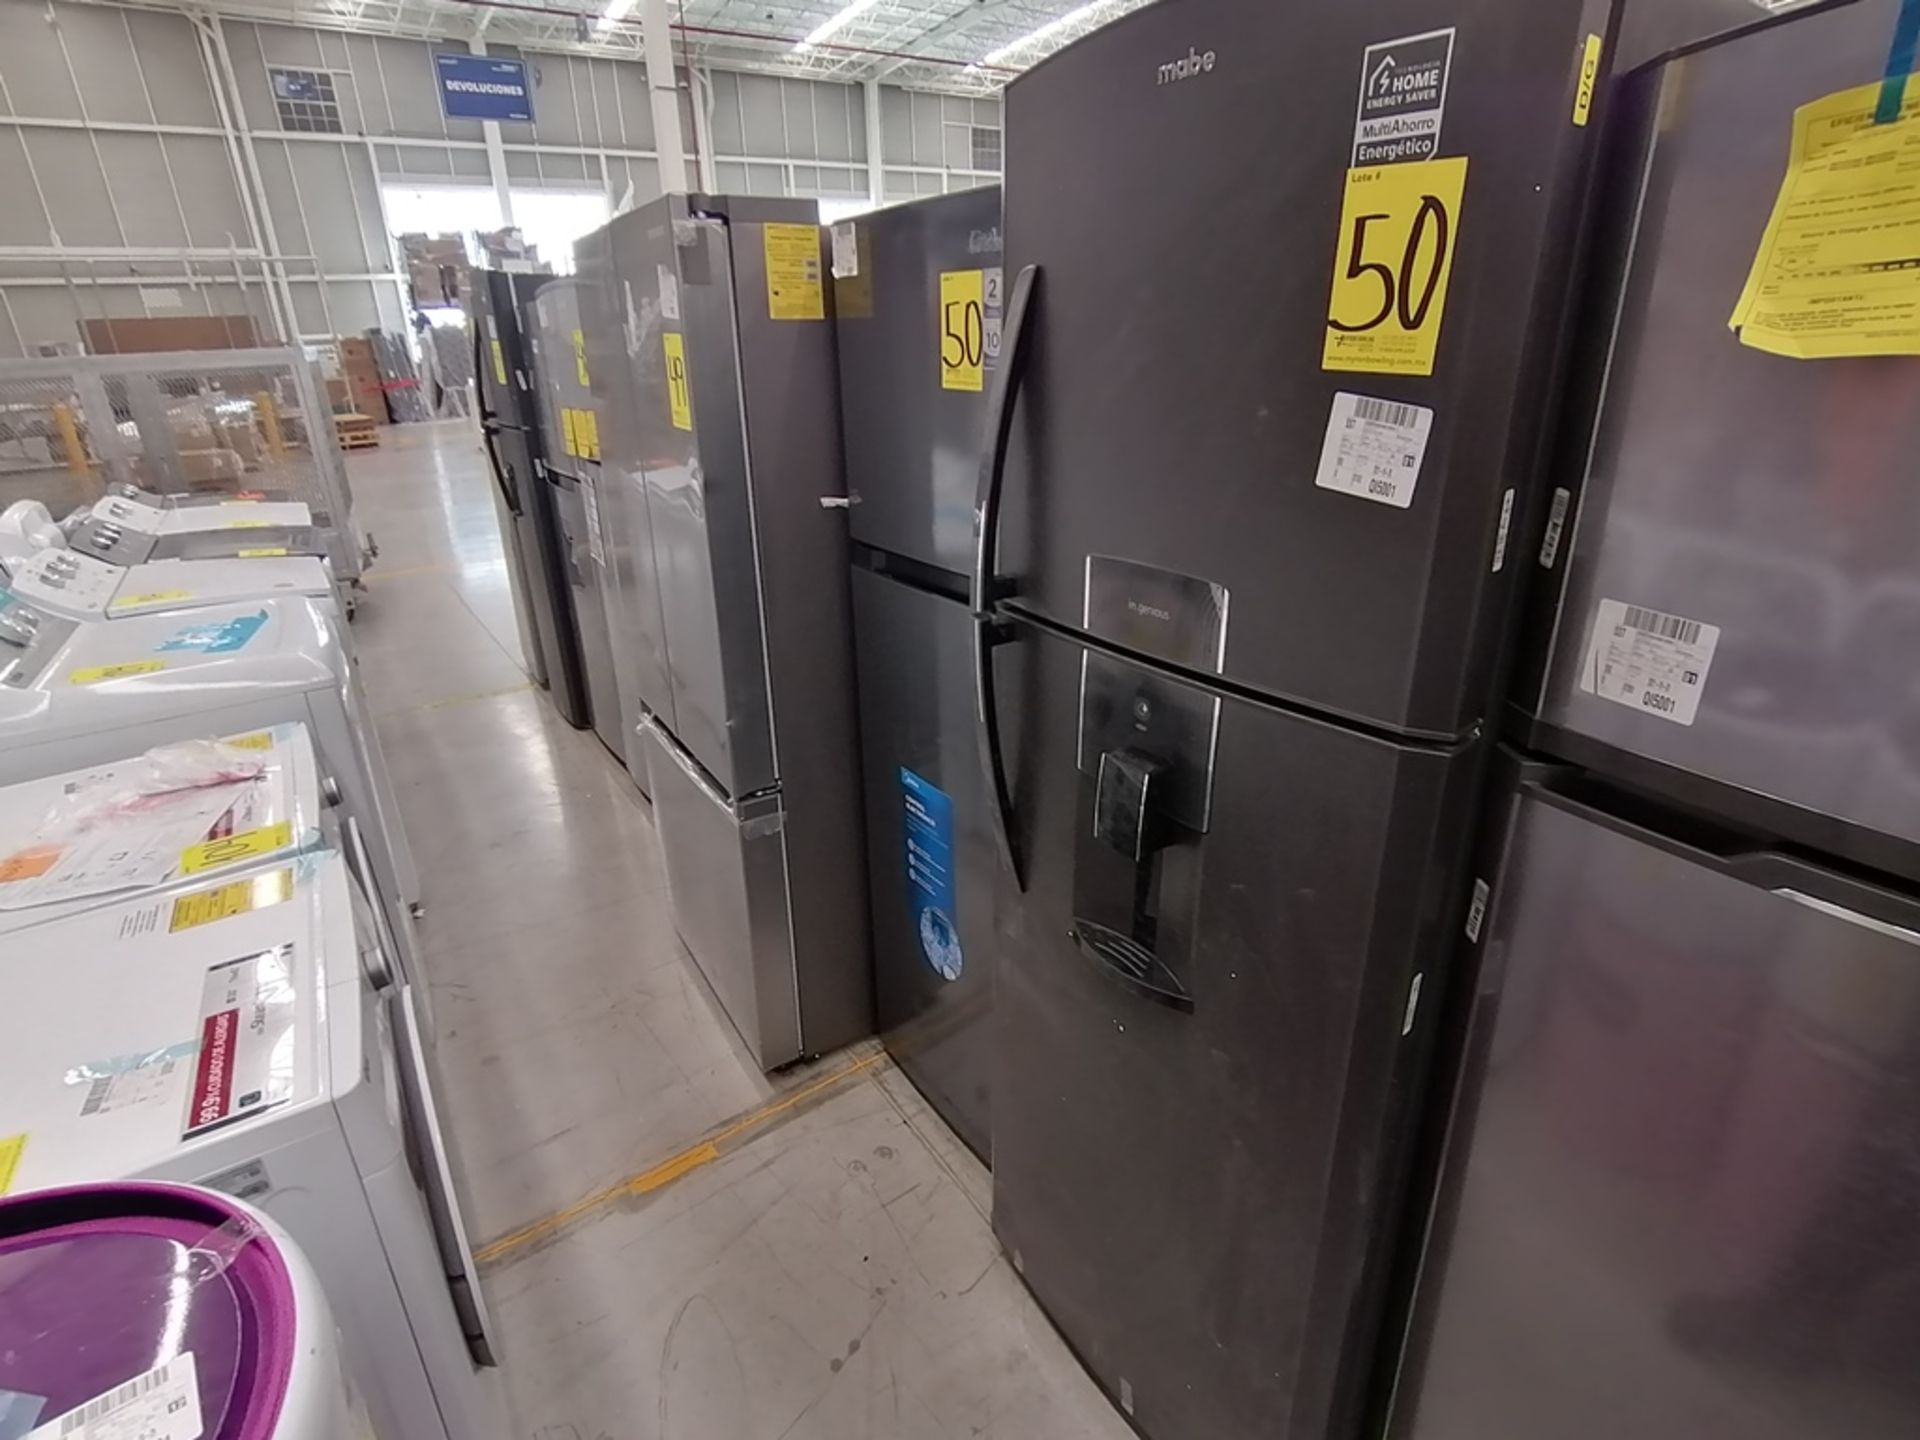 Lote de 2 refrigeradores incluye: 1 Refrigerador, Marca Midea, Modelo MRTN09G2NCS, Serie 341B261870